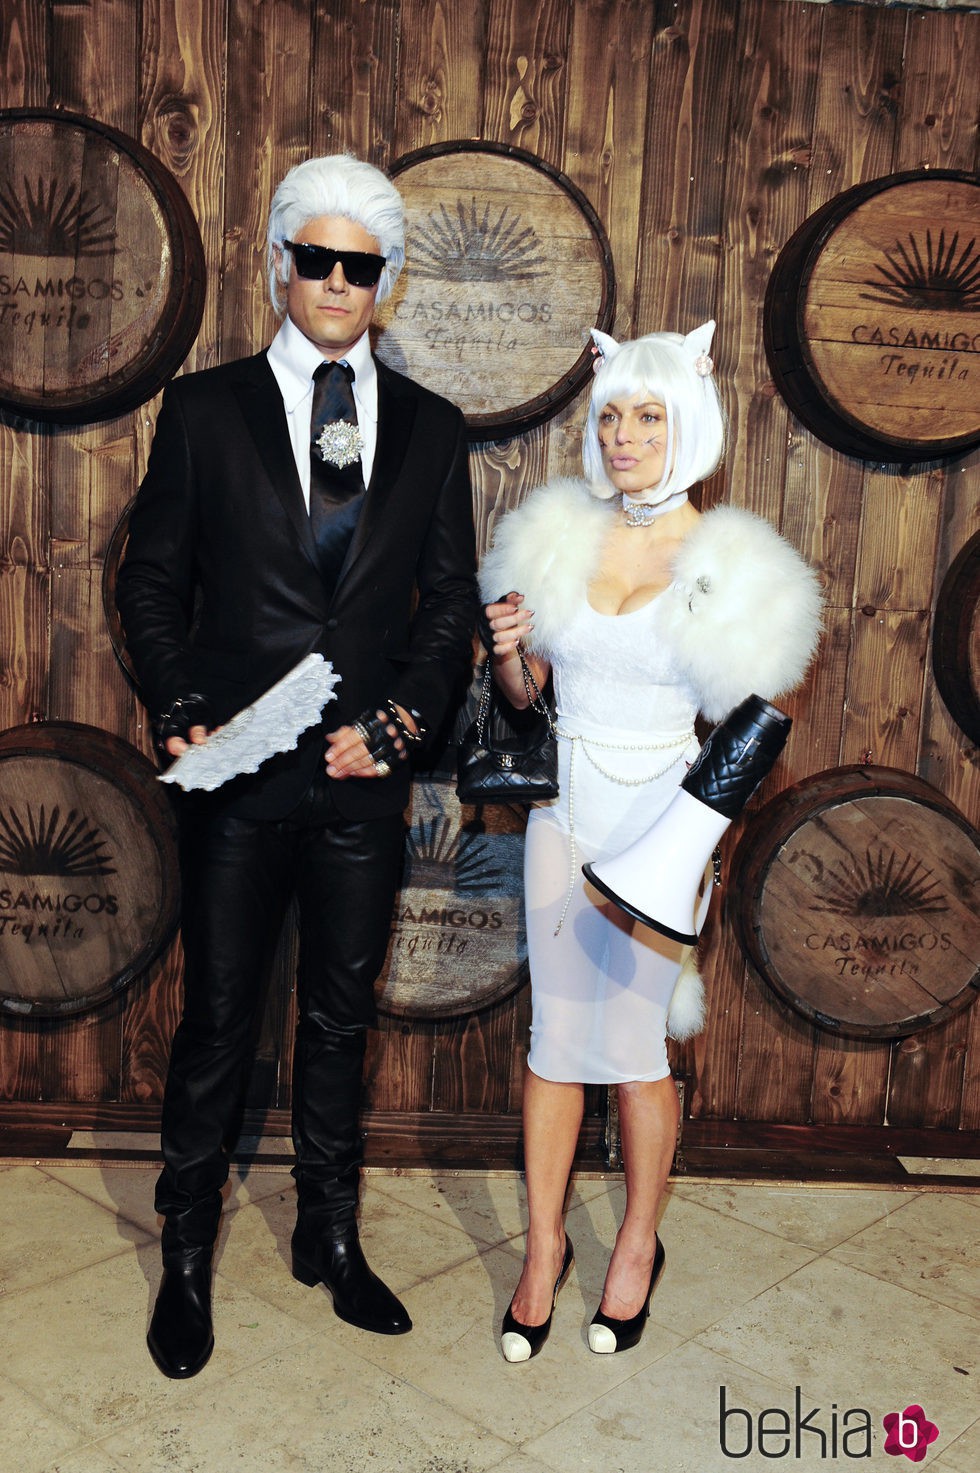 Fergie y Josh Duhamel disfrazados en la fiesta de Casamigos Tequila de Halloween 2015